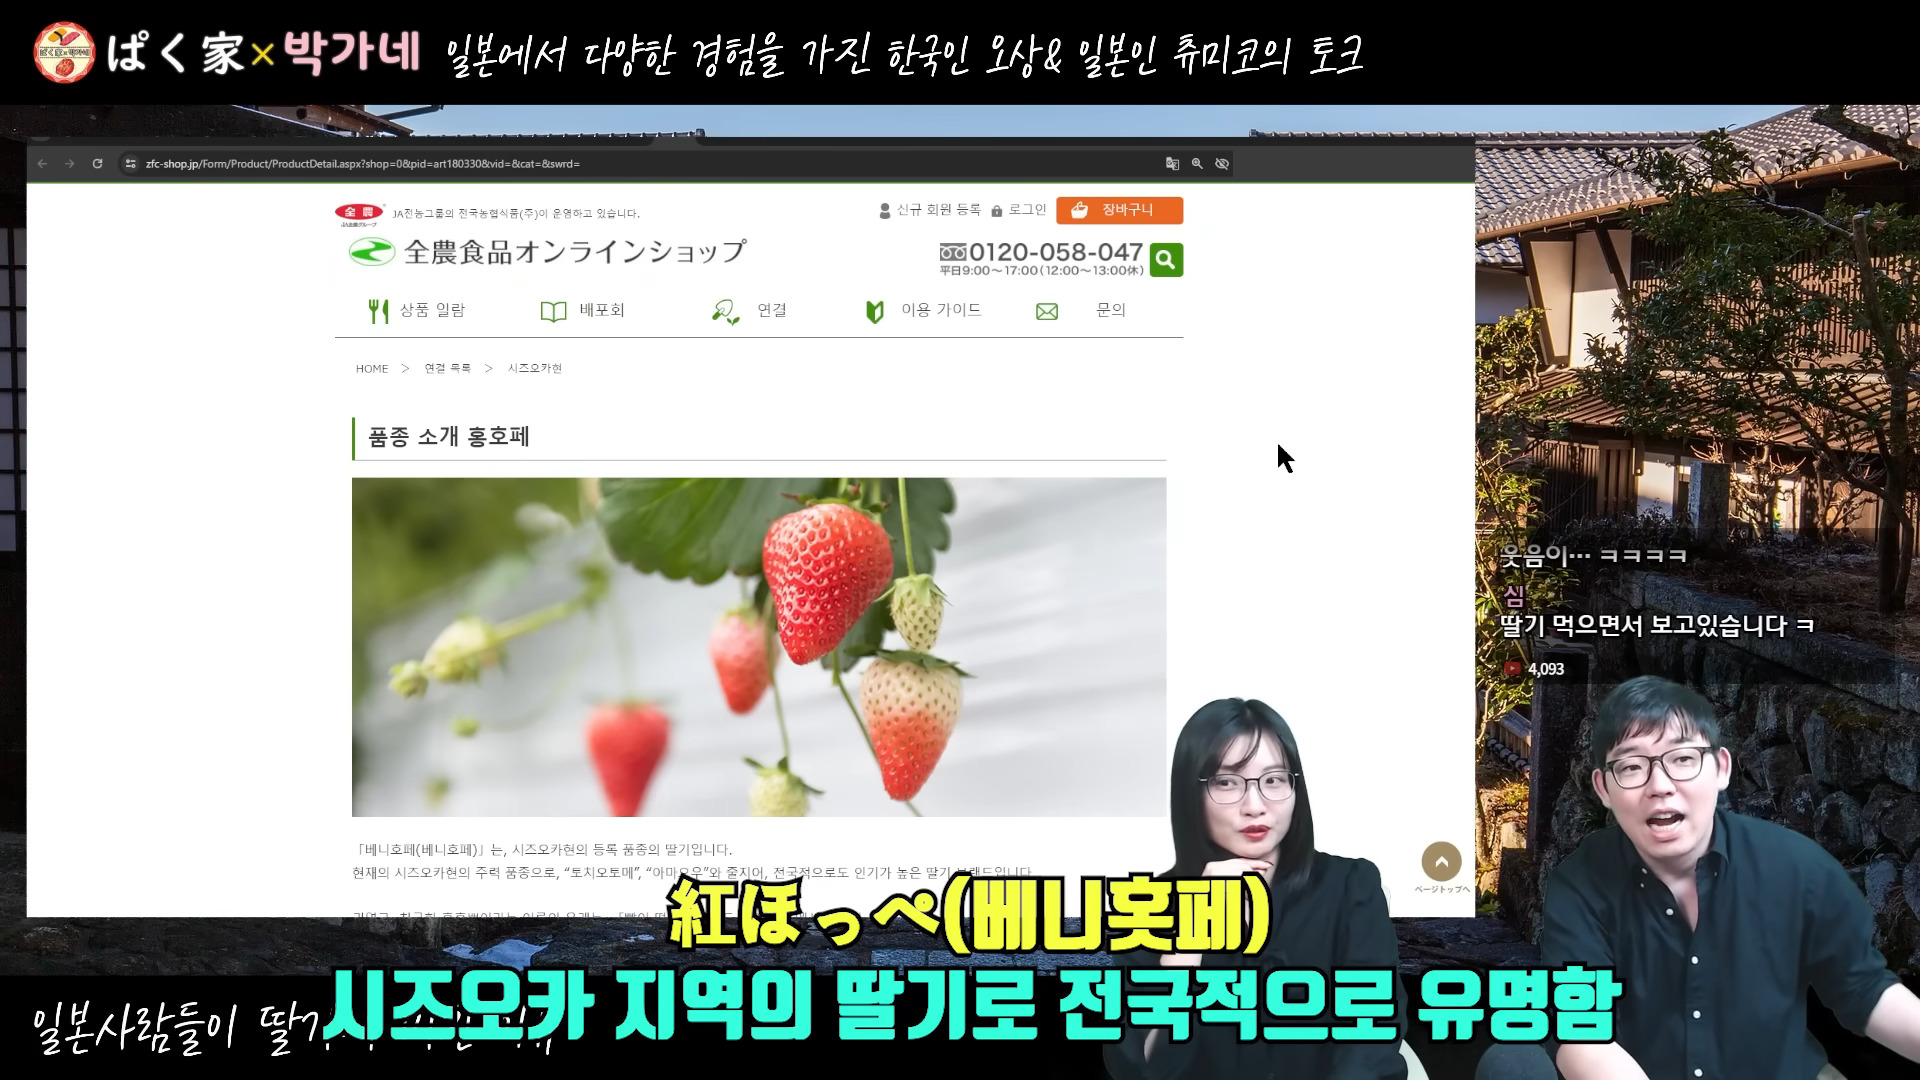 일본사람들이 딸기에 집착하는 이유 - YouTube - 0-5-05.jpg